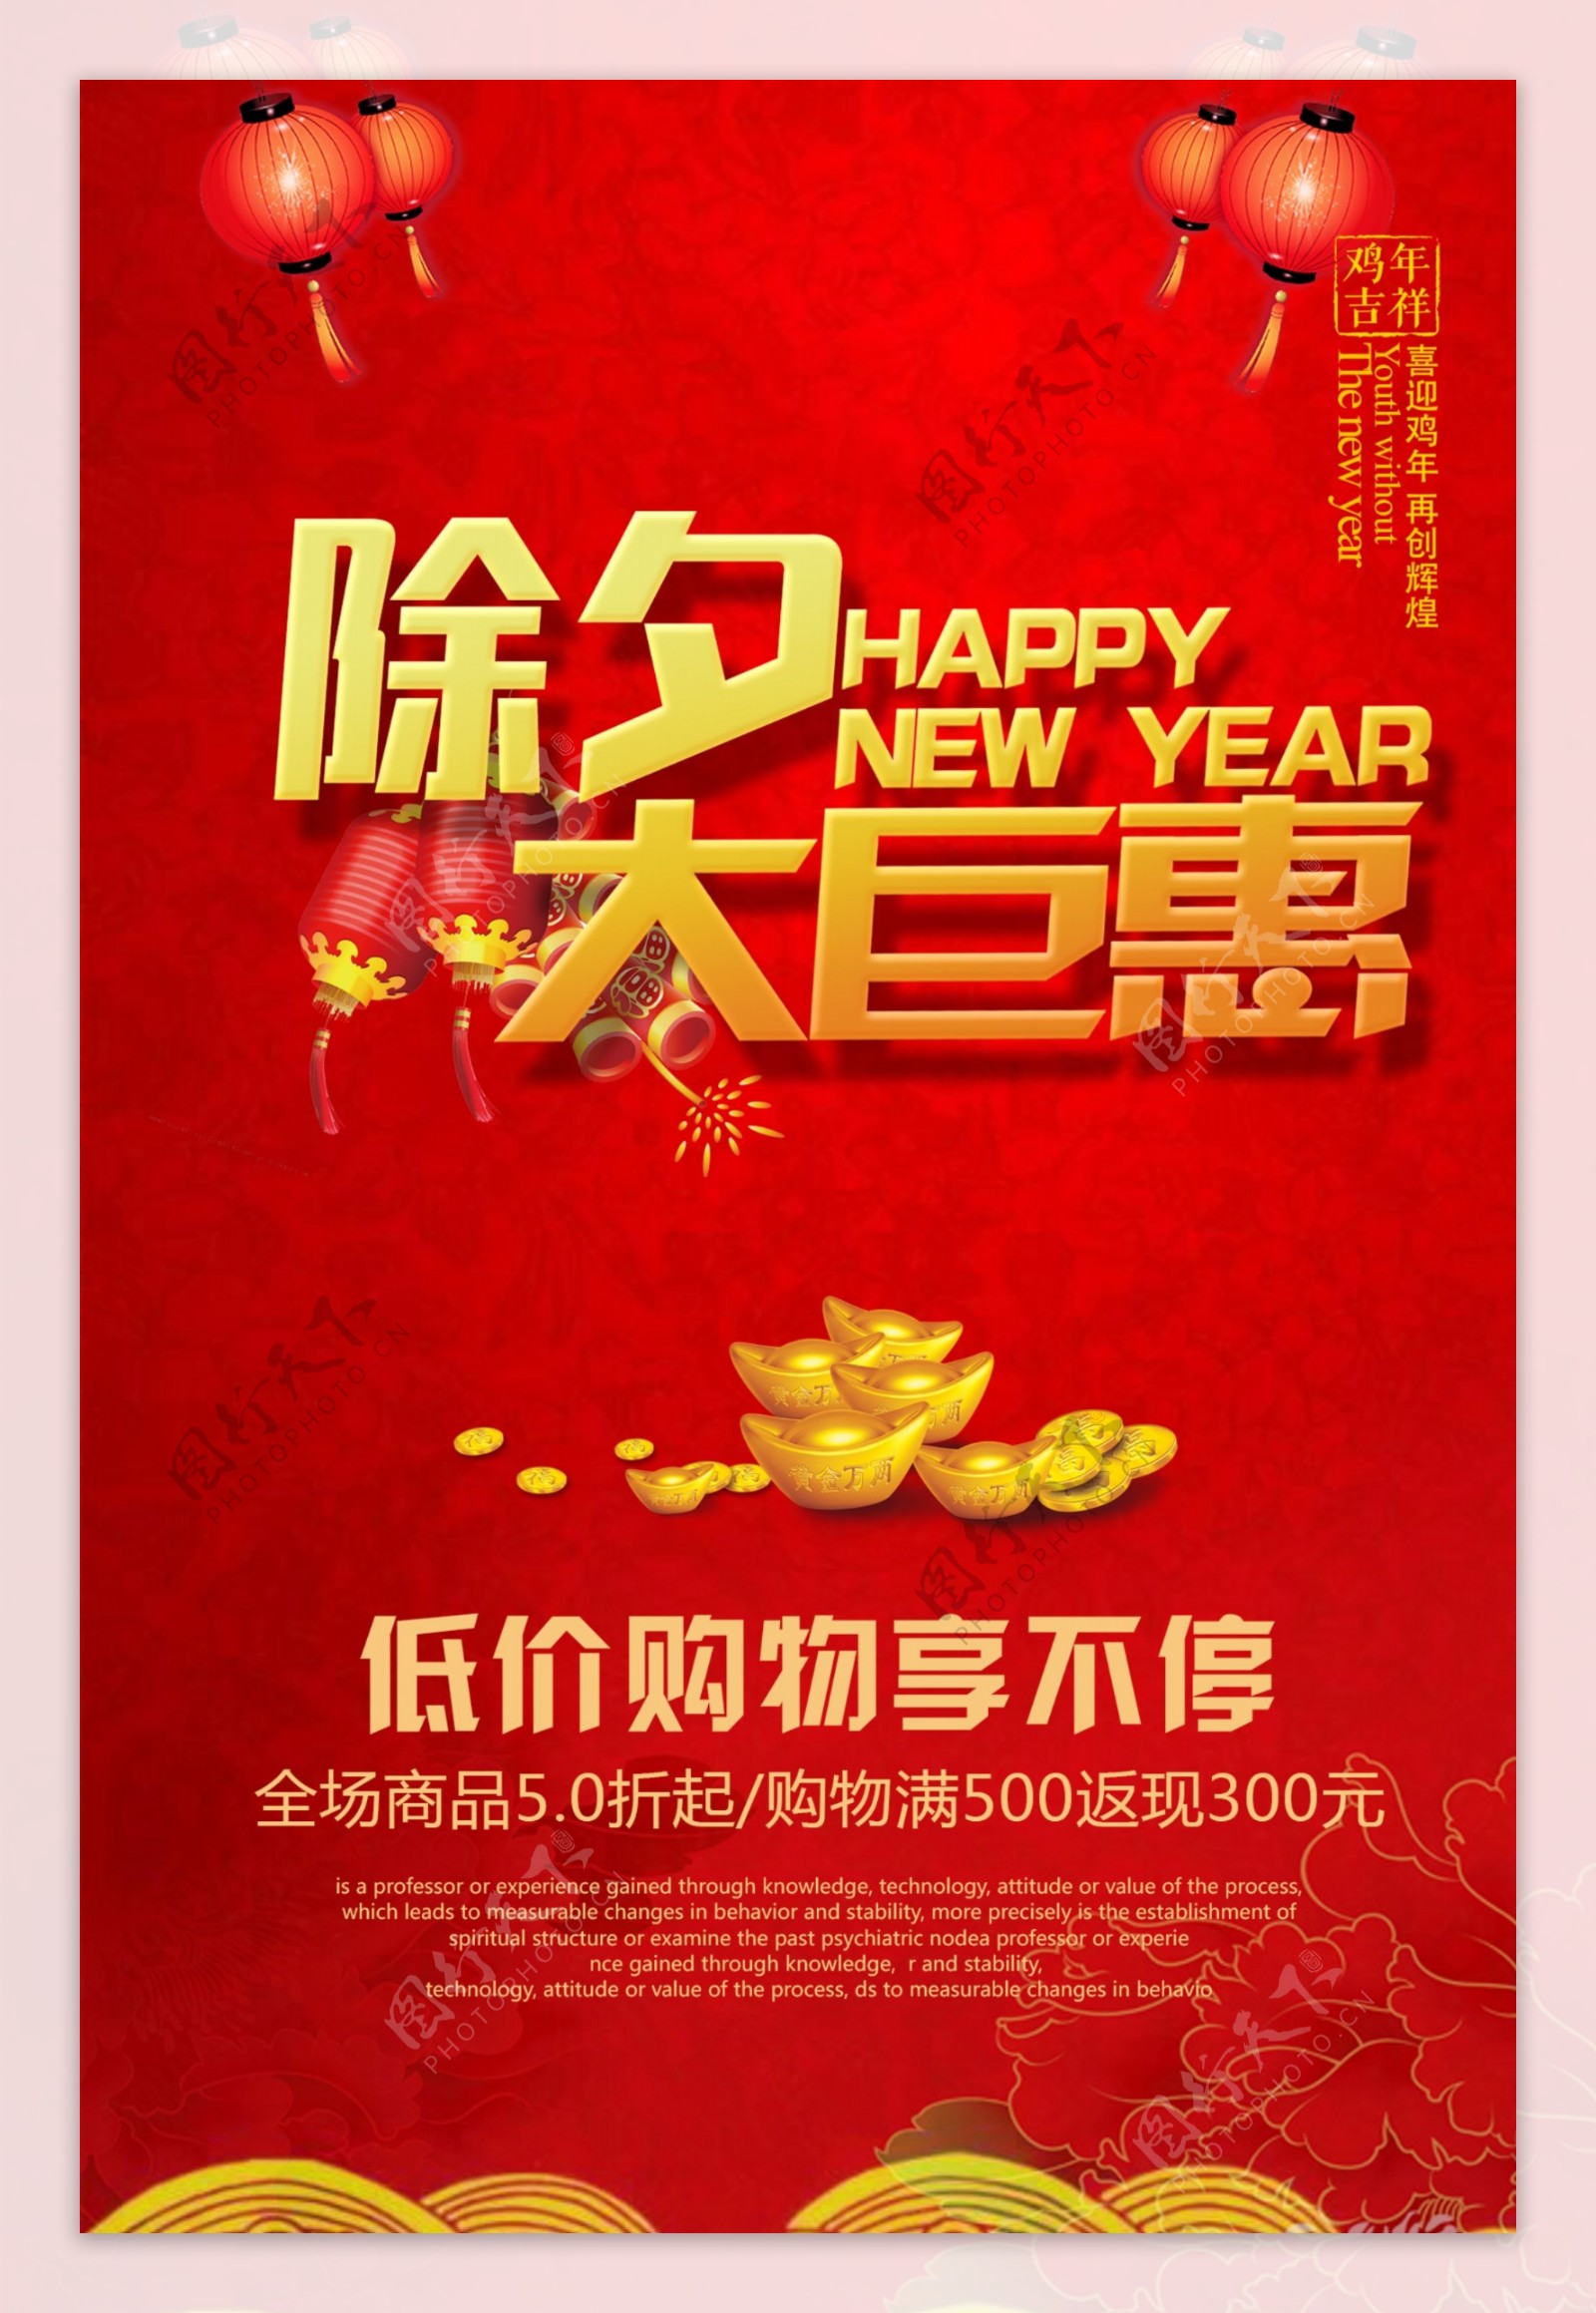 2017鸡年新年除夕大巨惠促销海报设计